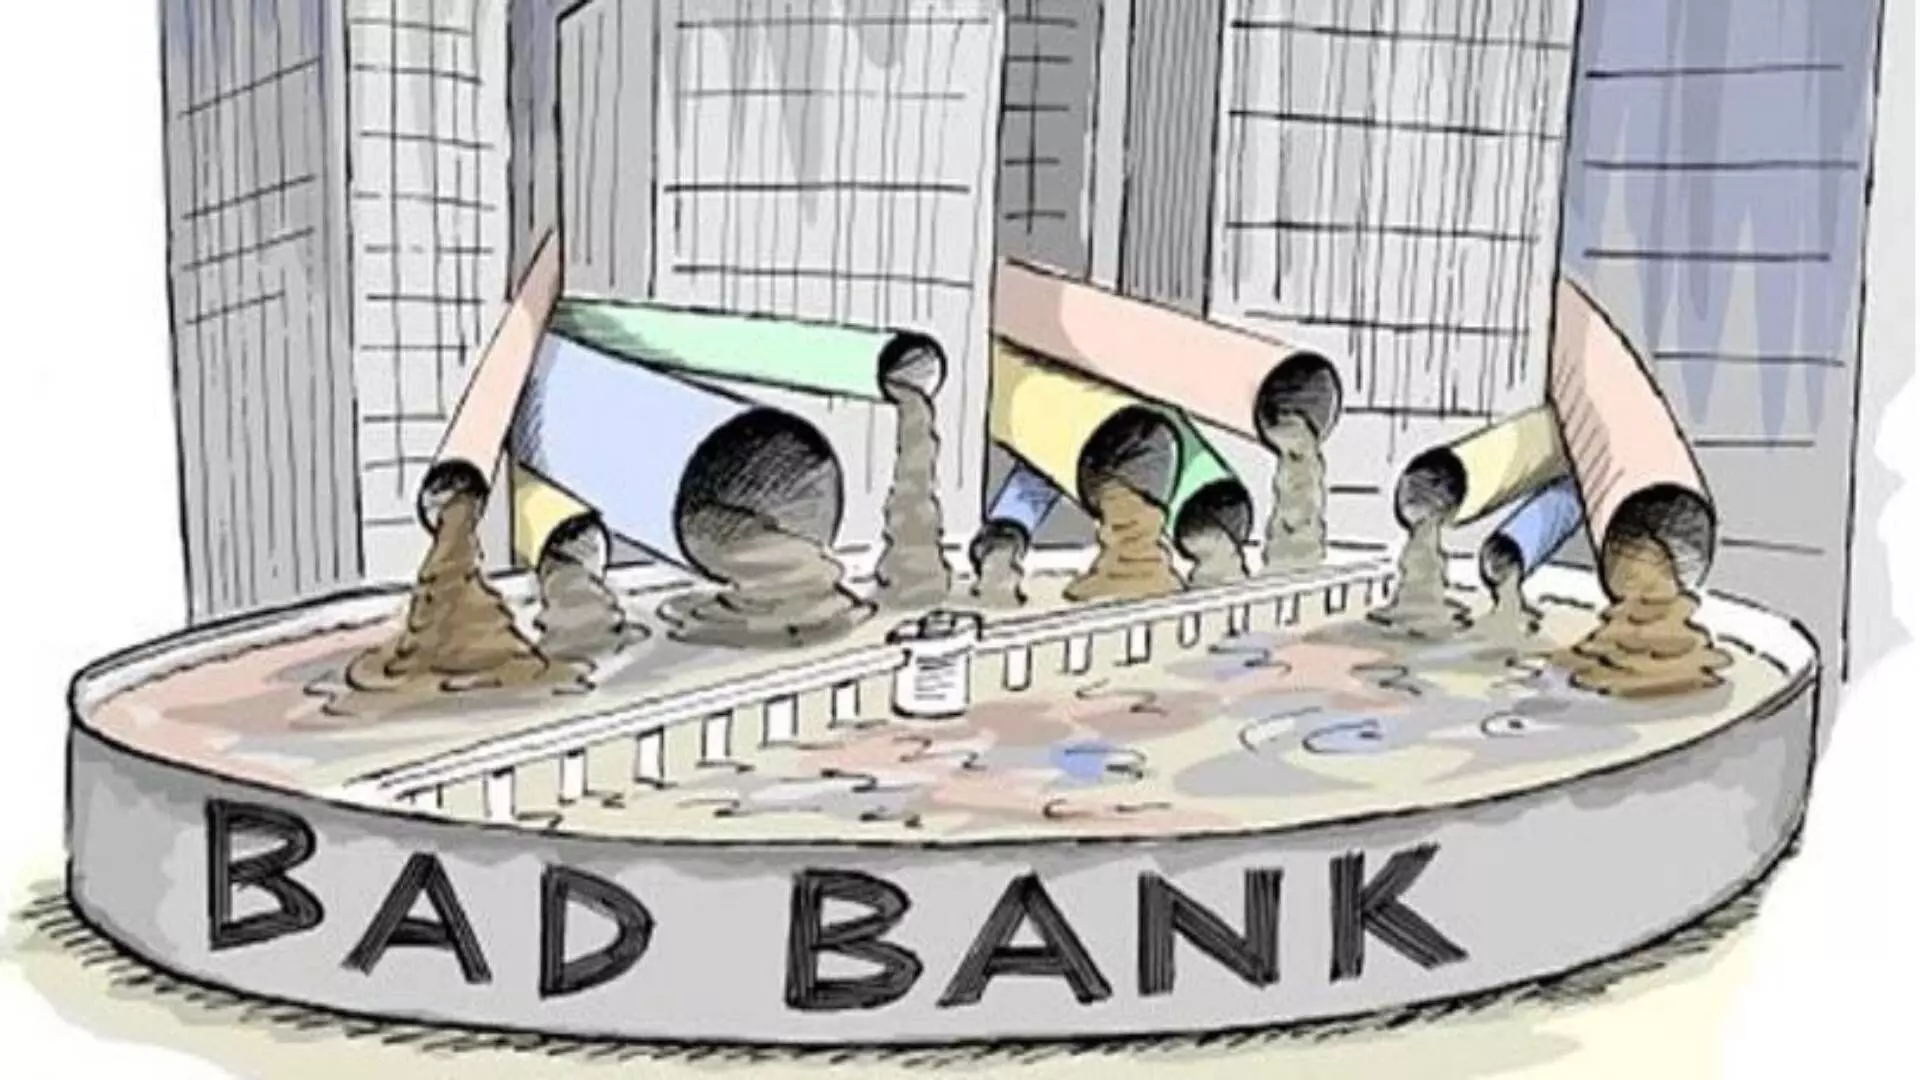 बॅड बँकेच्या निमित्ताने: जागतिक कॉर्पोरेट भांडवलशाहीचे भंगार विक्री केंद्र